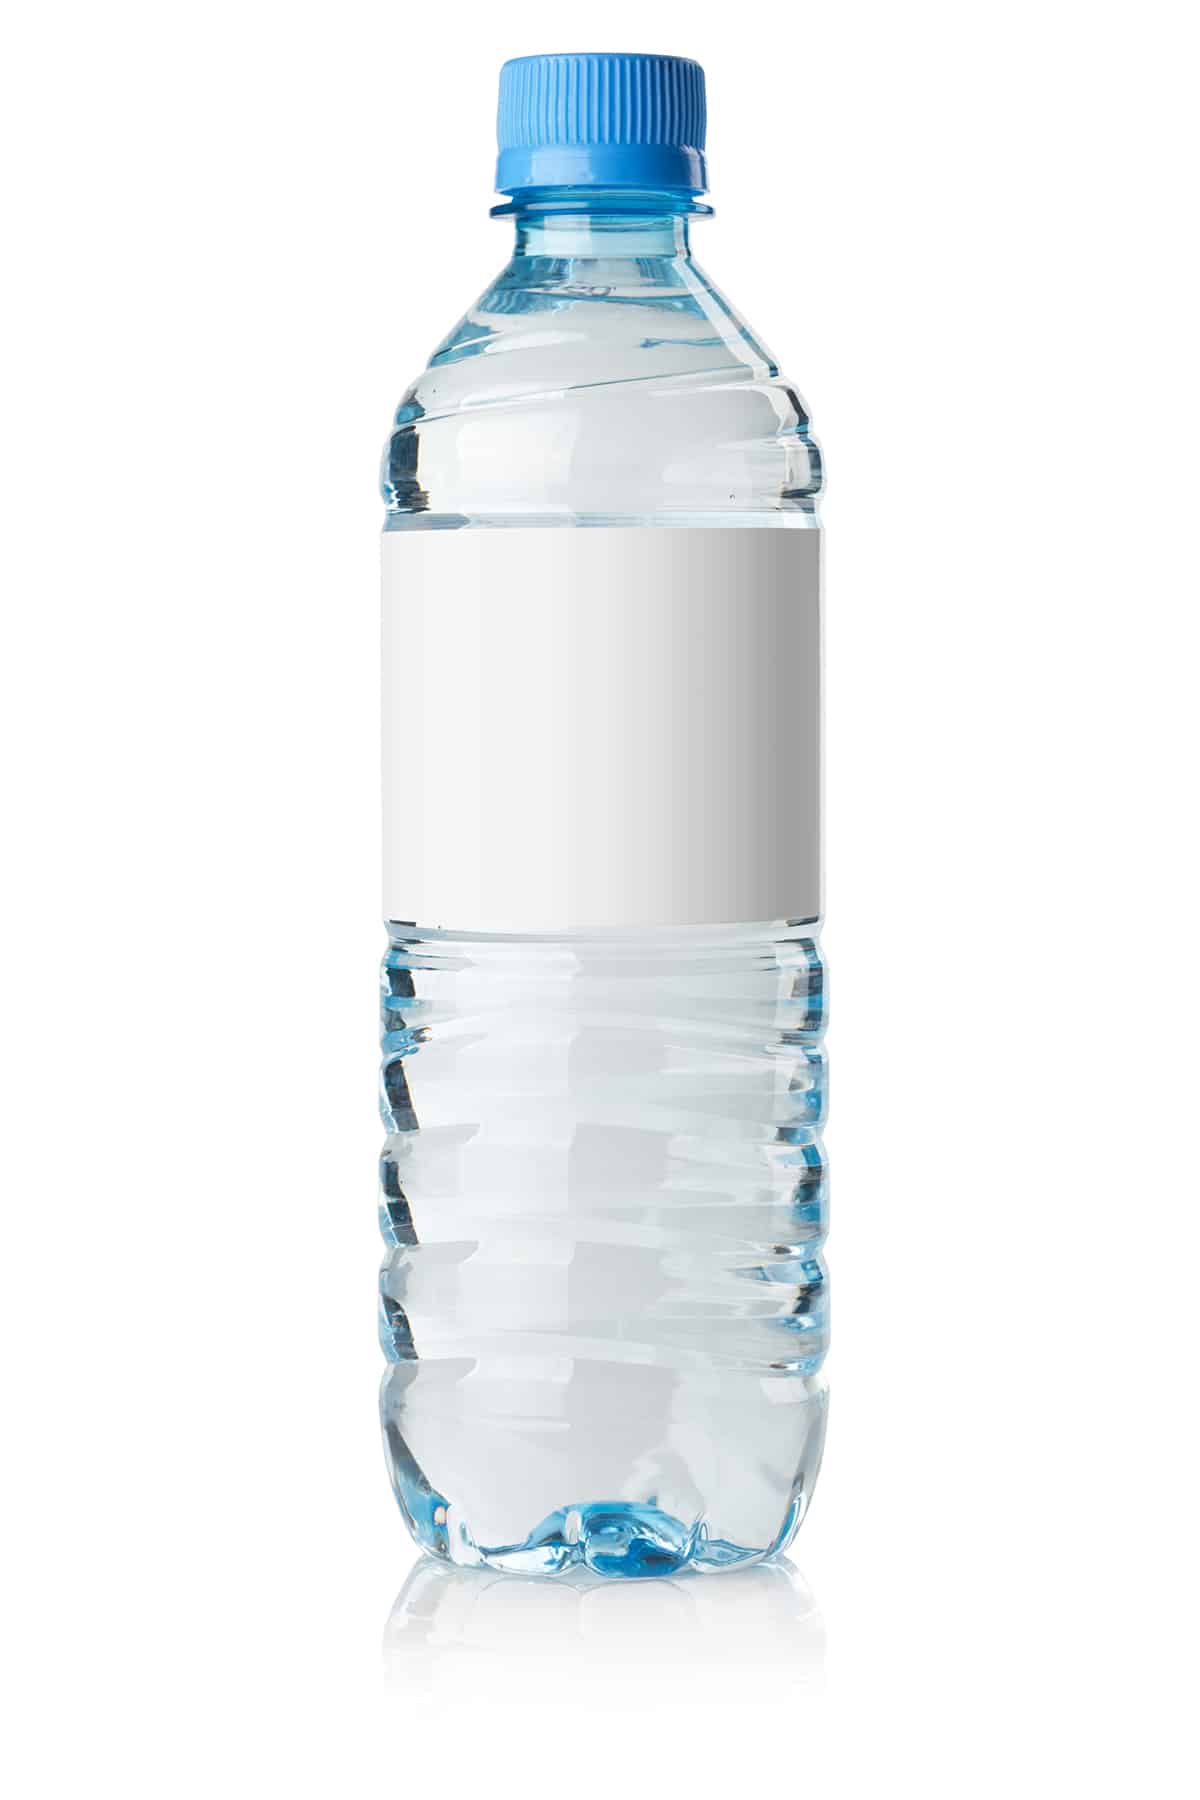 Width of Water Bottle